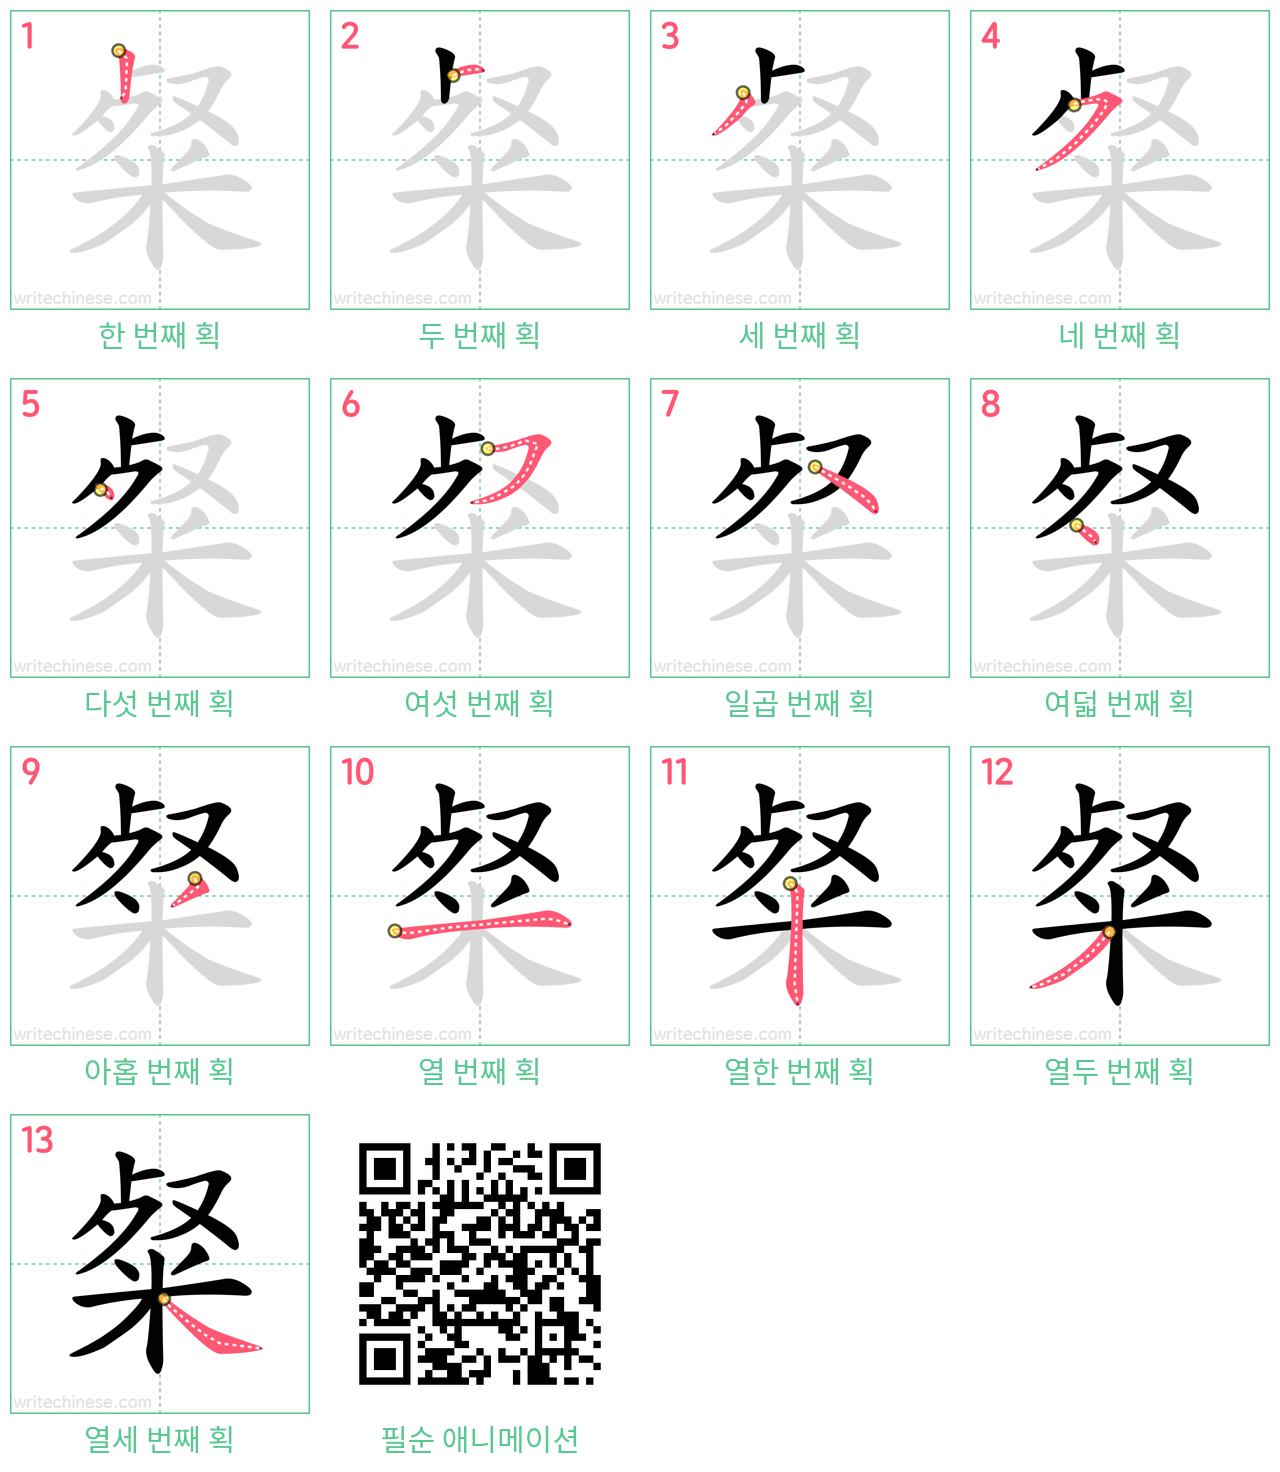 粲 step-by-step stroke order diagrams